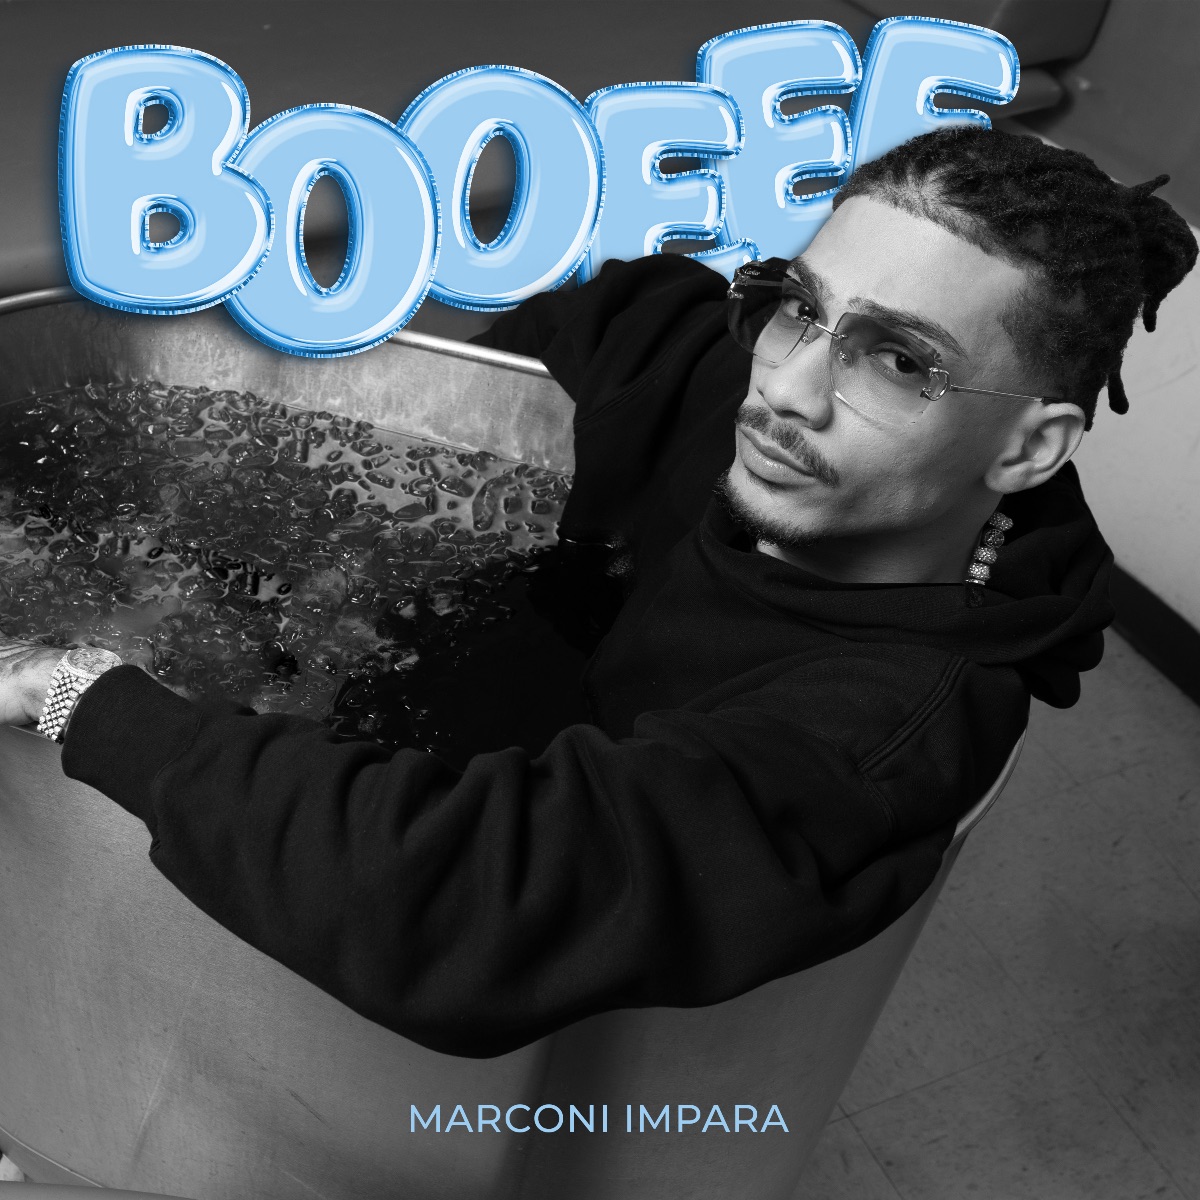 Marconi Impara se reinventa en su álbum debut ‘BOOEEE’